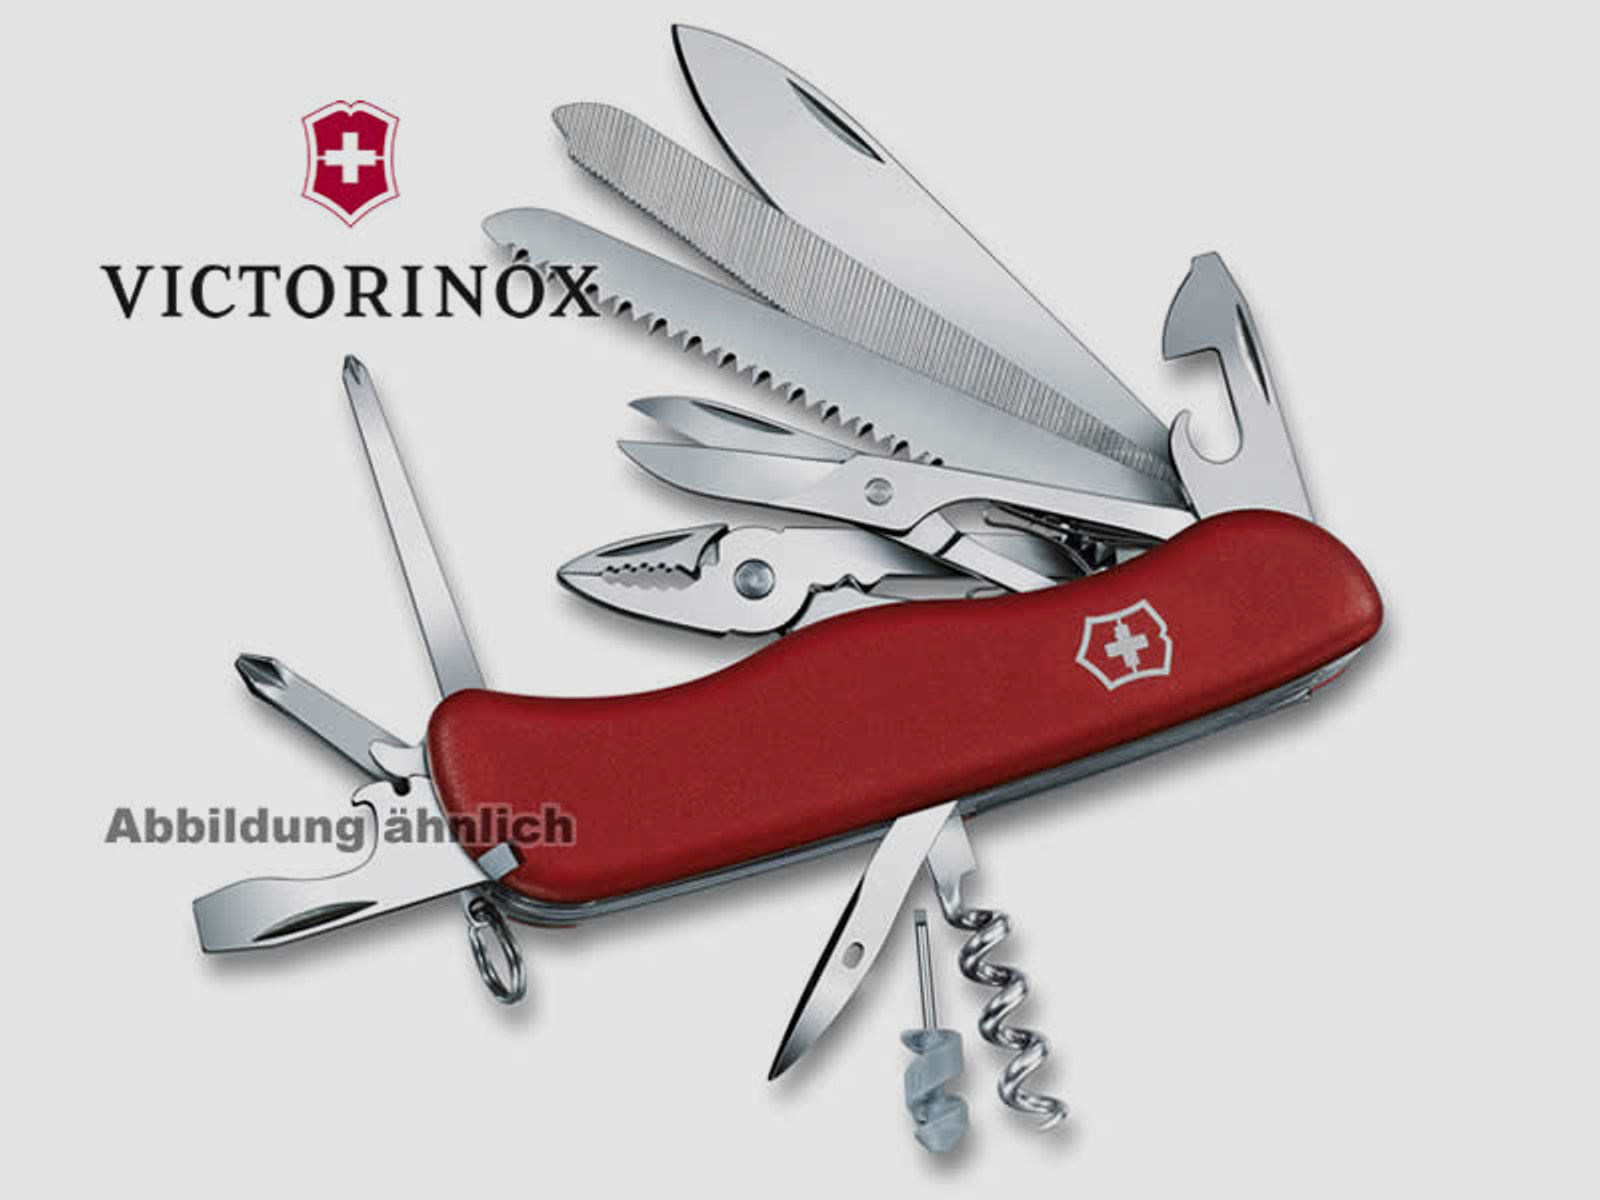 VICTORINOX Multi-Messer WORKCHAMP, 111 mm, 21 Funktionen, Schweizer Taschenmesser